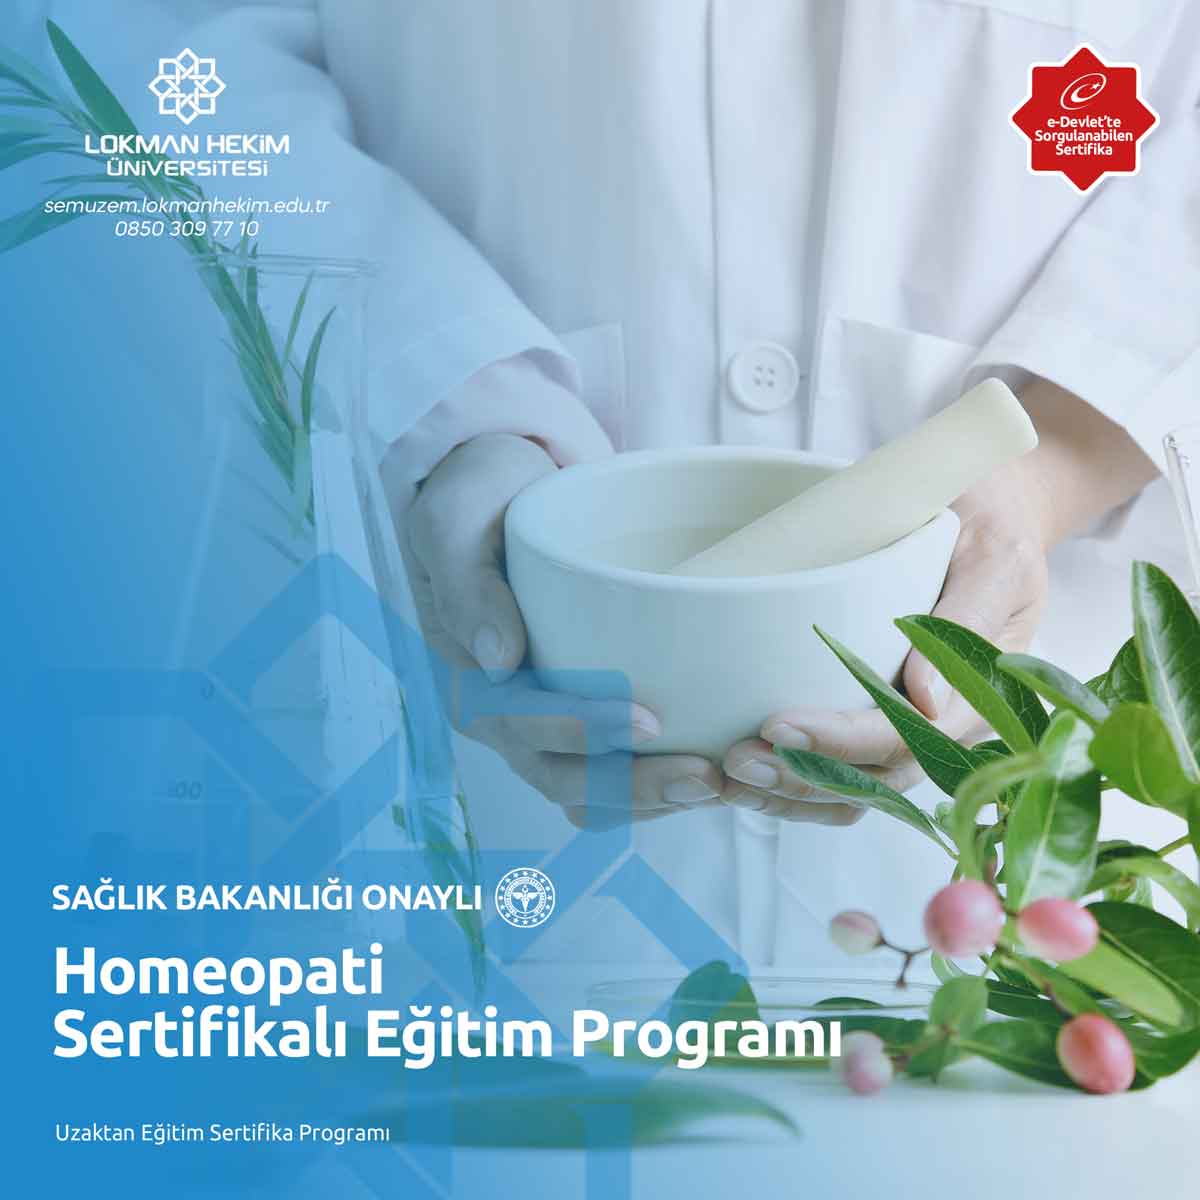 Homeopati Sertifikalı Eğitim Programı